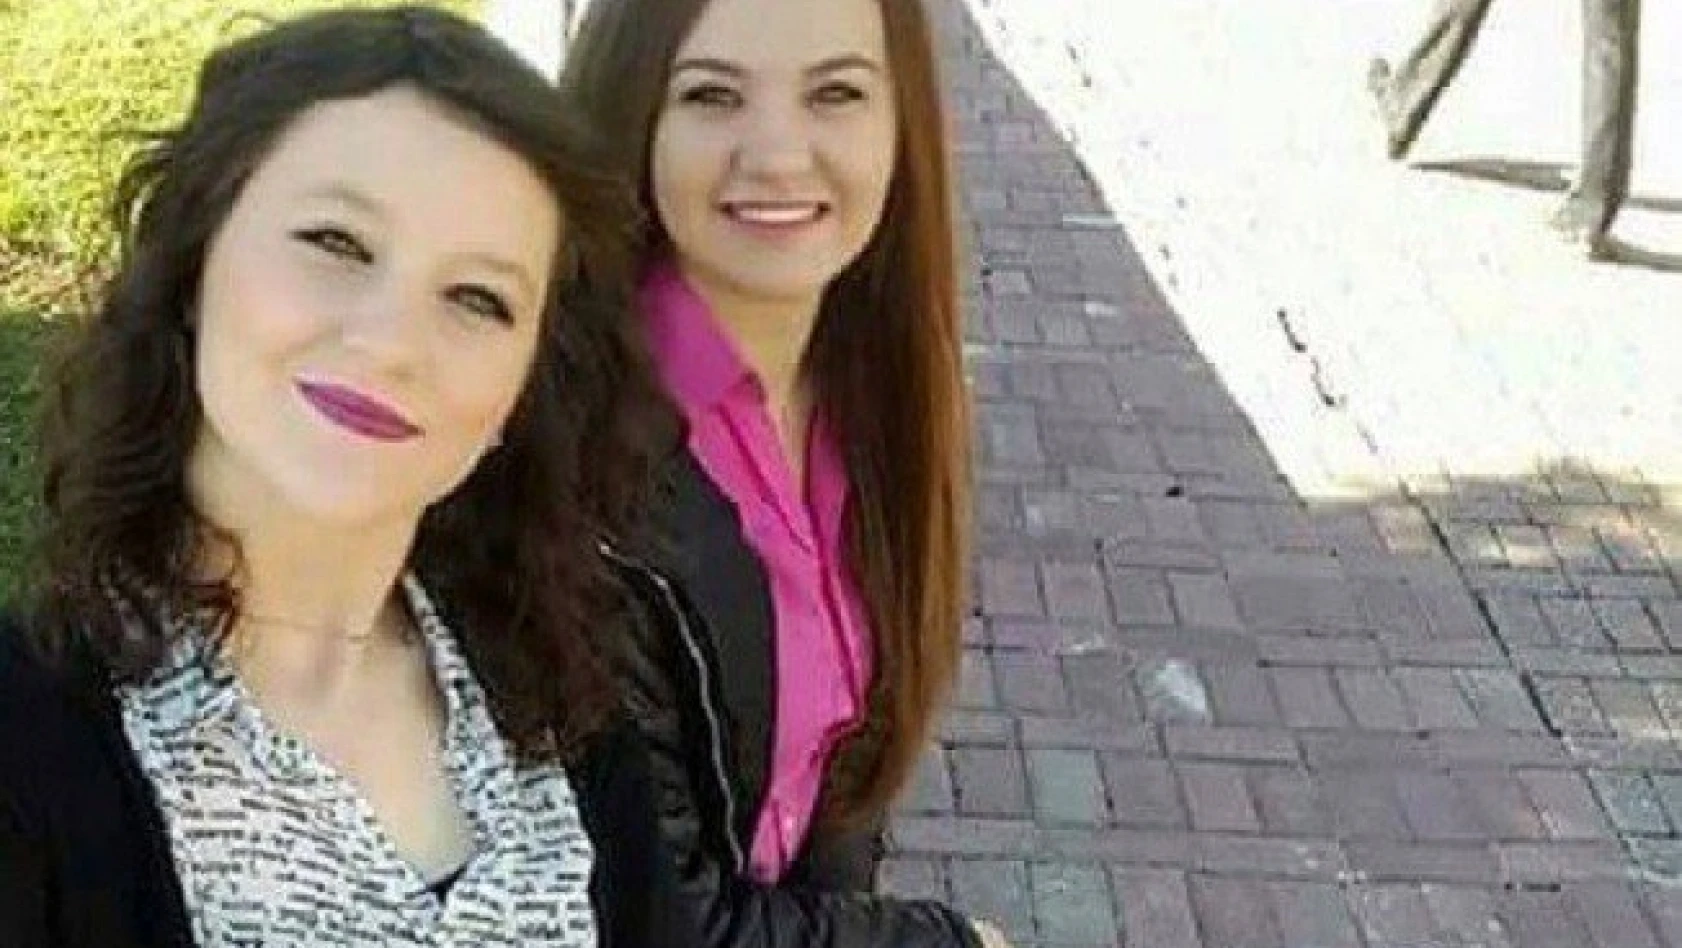 Kazada ölen üniversiteli kızların paylaşımı yürek burktu